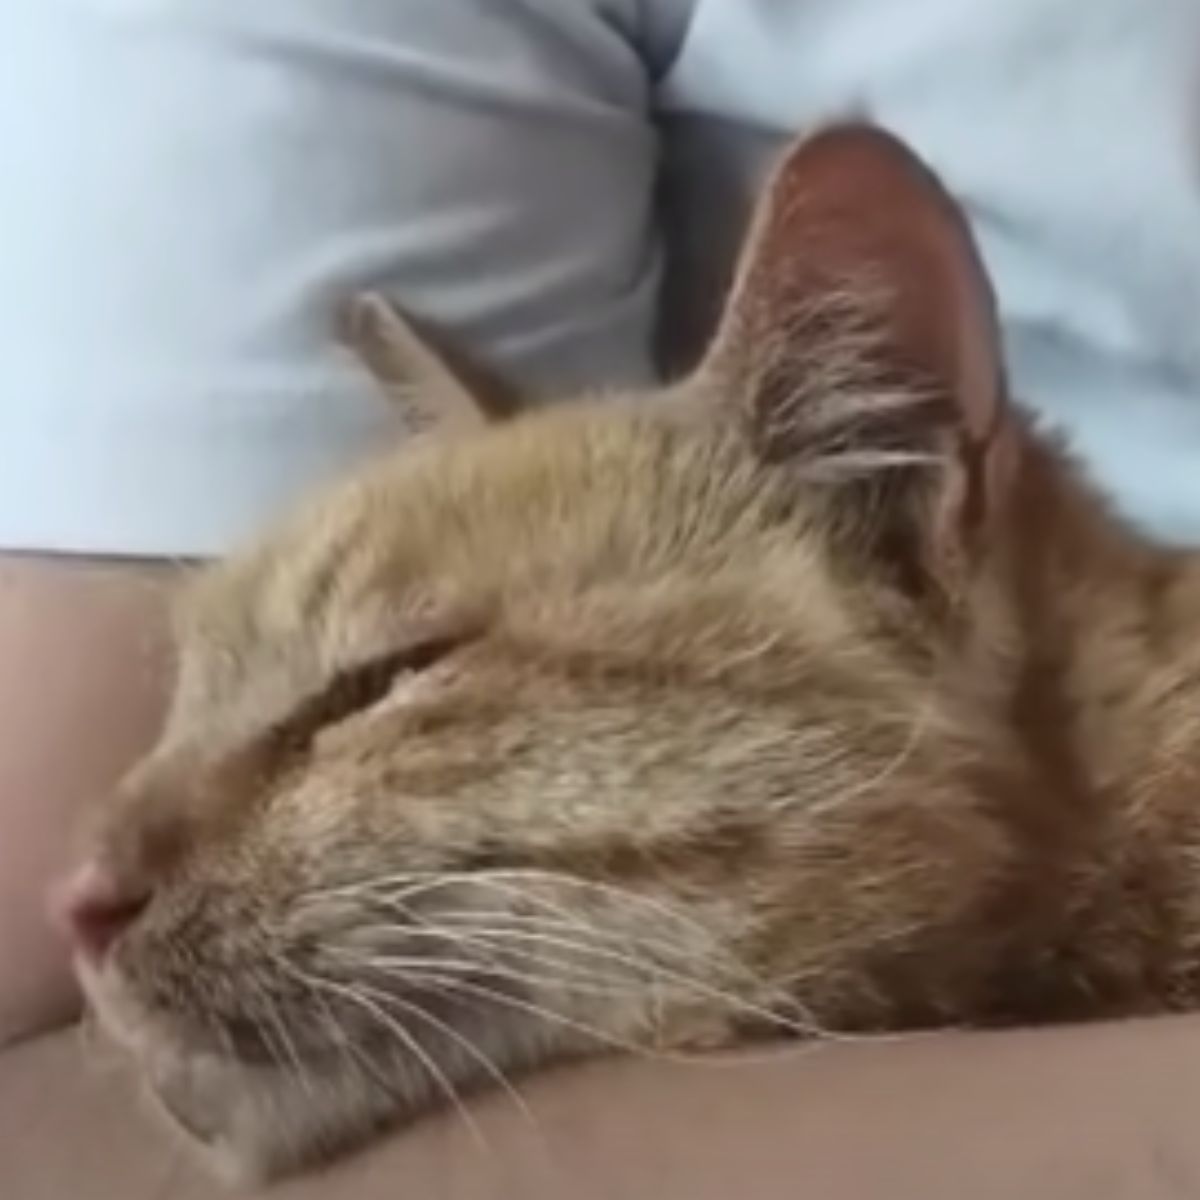 deformed ginger cat